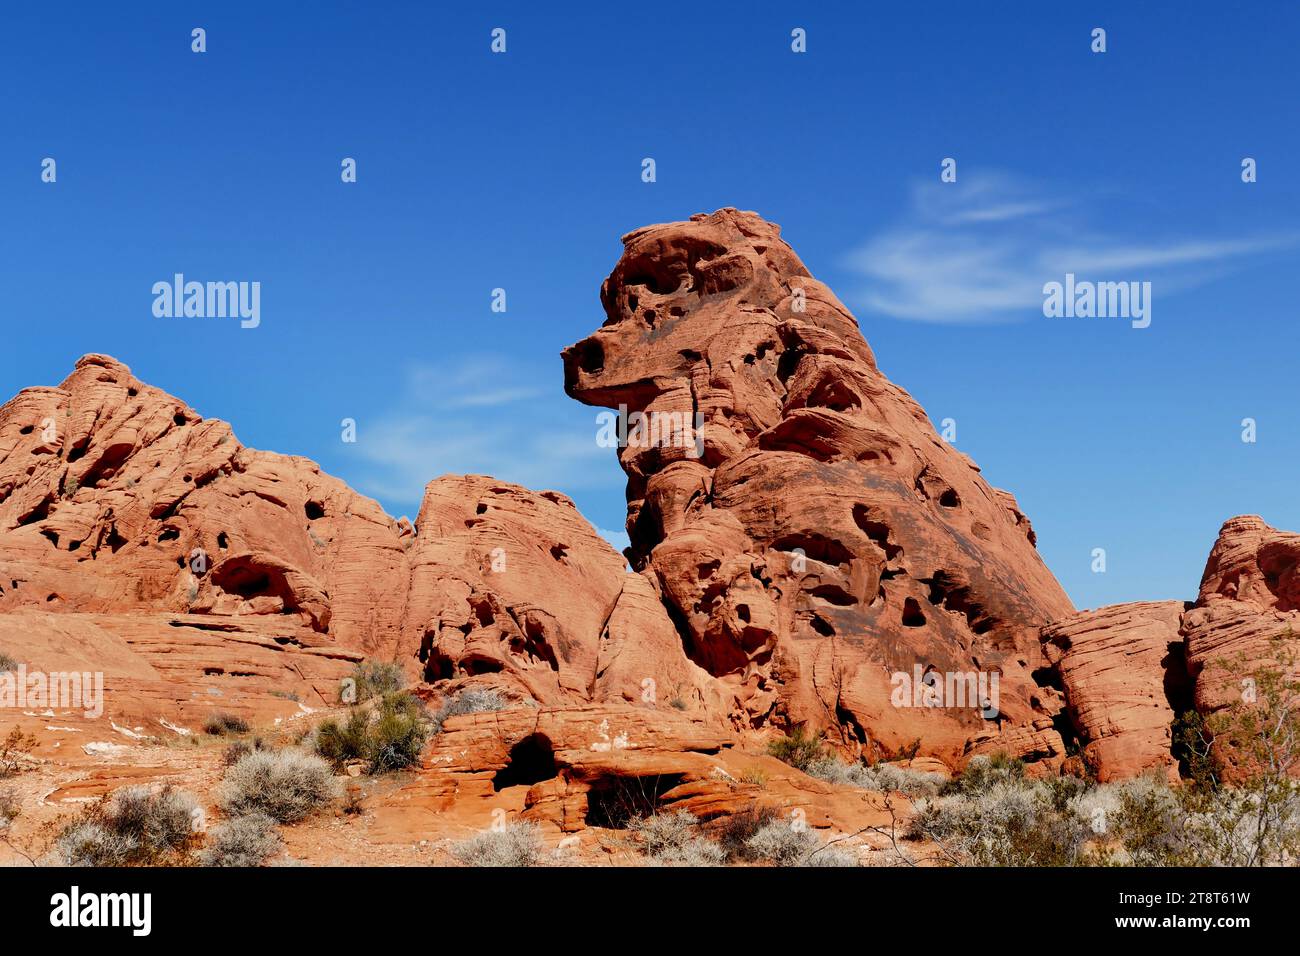 Pudel Rock. Valley of Fire Nevada, Valley of Fire ist der älteste State Park in Nevada und ein großartiger Ort, um 3.000 Jahre alte indische Petroglyphen zu sehen und die roten Sandsteinformationen zu erkunden, die während der Zeit der Dinosaurier entstanden sind. Bringen Sie Ihre Kamera mit, um die Landschaft zu fotografieren, während Sie diese felsige Landschaft erkunden, die vor über 150 Millionen Jahren entstanden ist. Der rote Sandstein strahlt ein unglaubliches Licht aus, das die grauen Felsen in der Nähe türkis erscheinen lässt Stockfoto